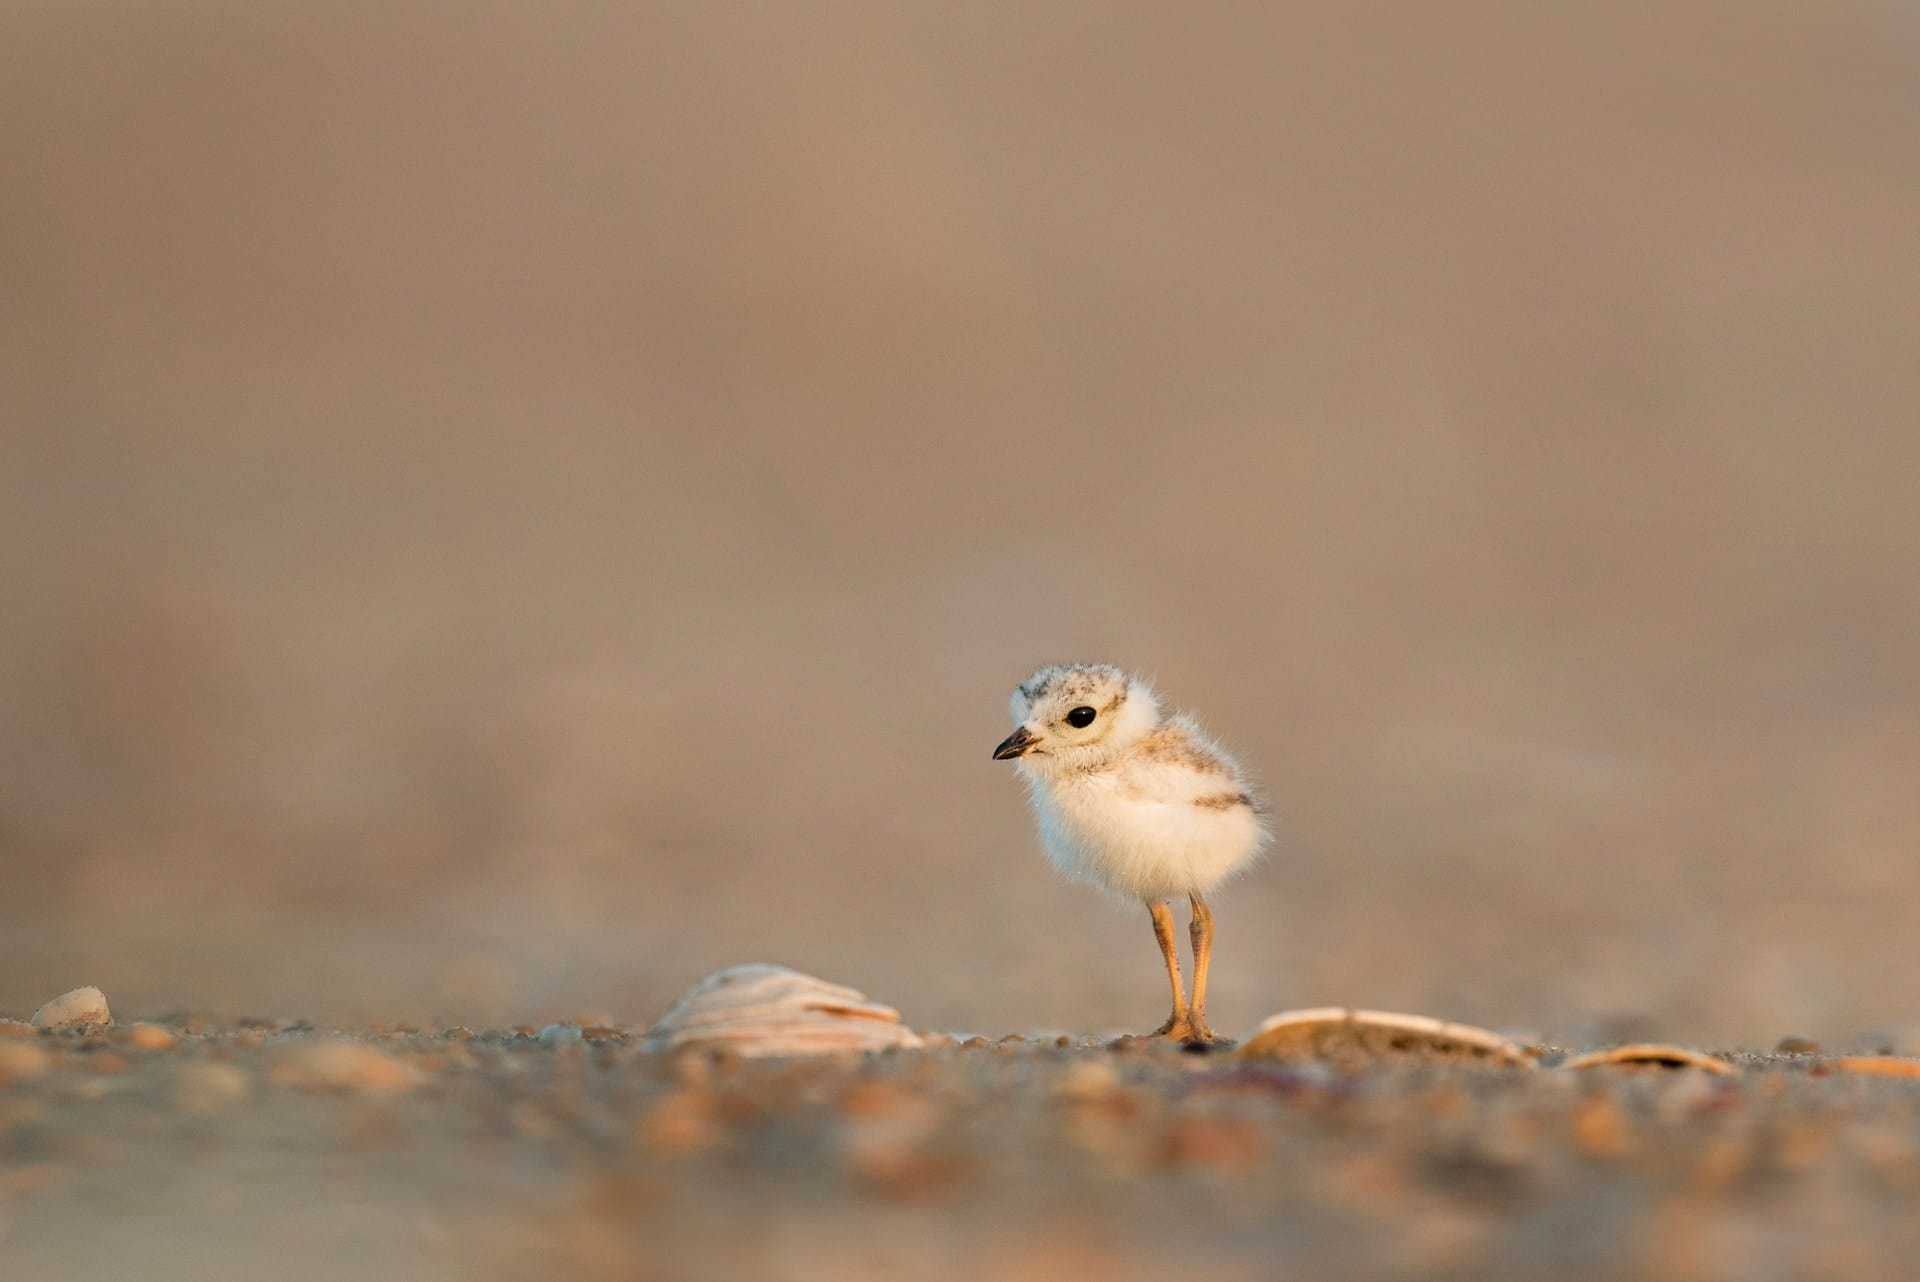 A very small bird near shells on the beach